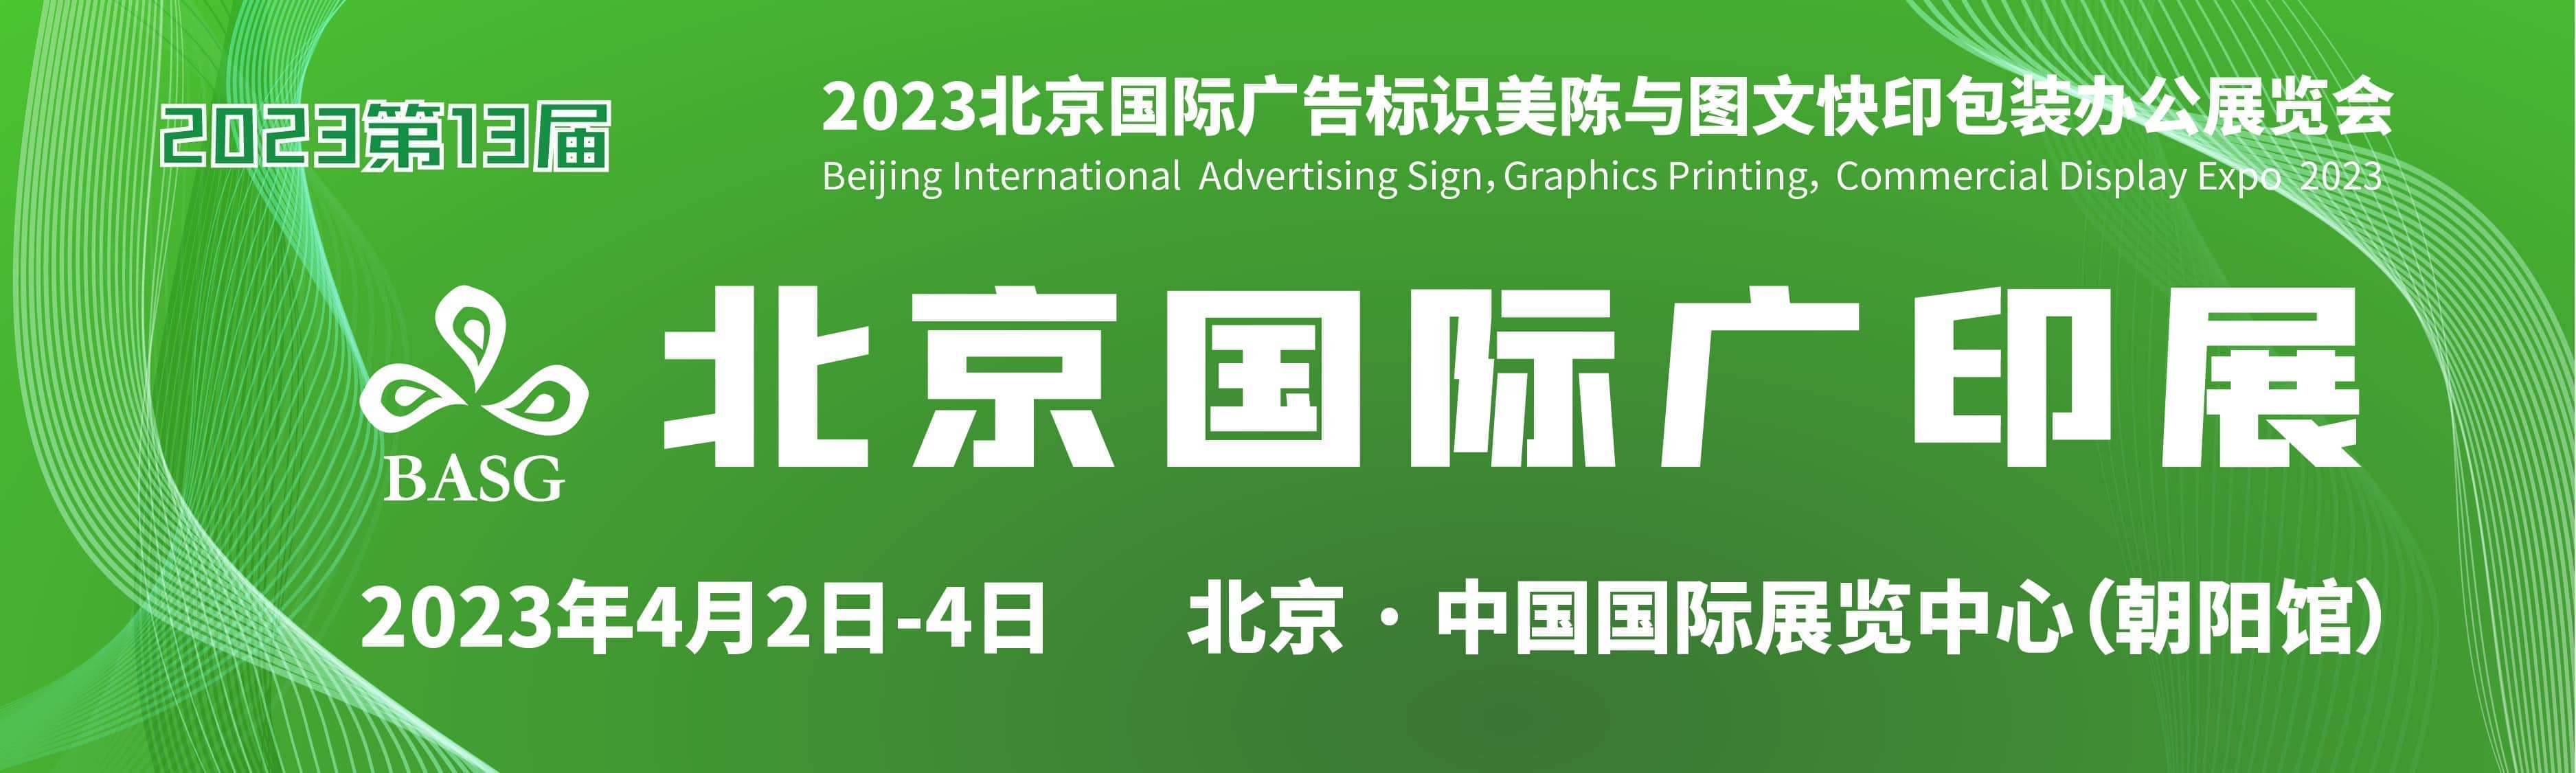 	2023第13届北京国际广告标识美陈与图文快印展览会信息验证